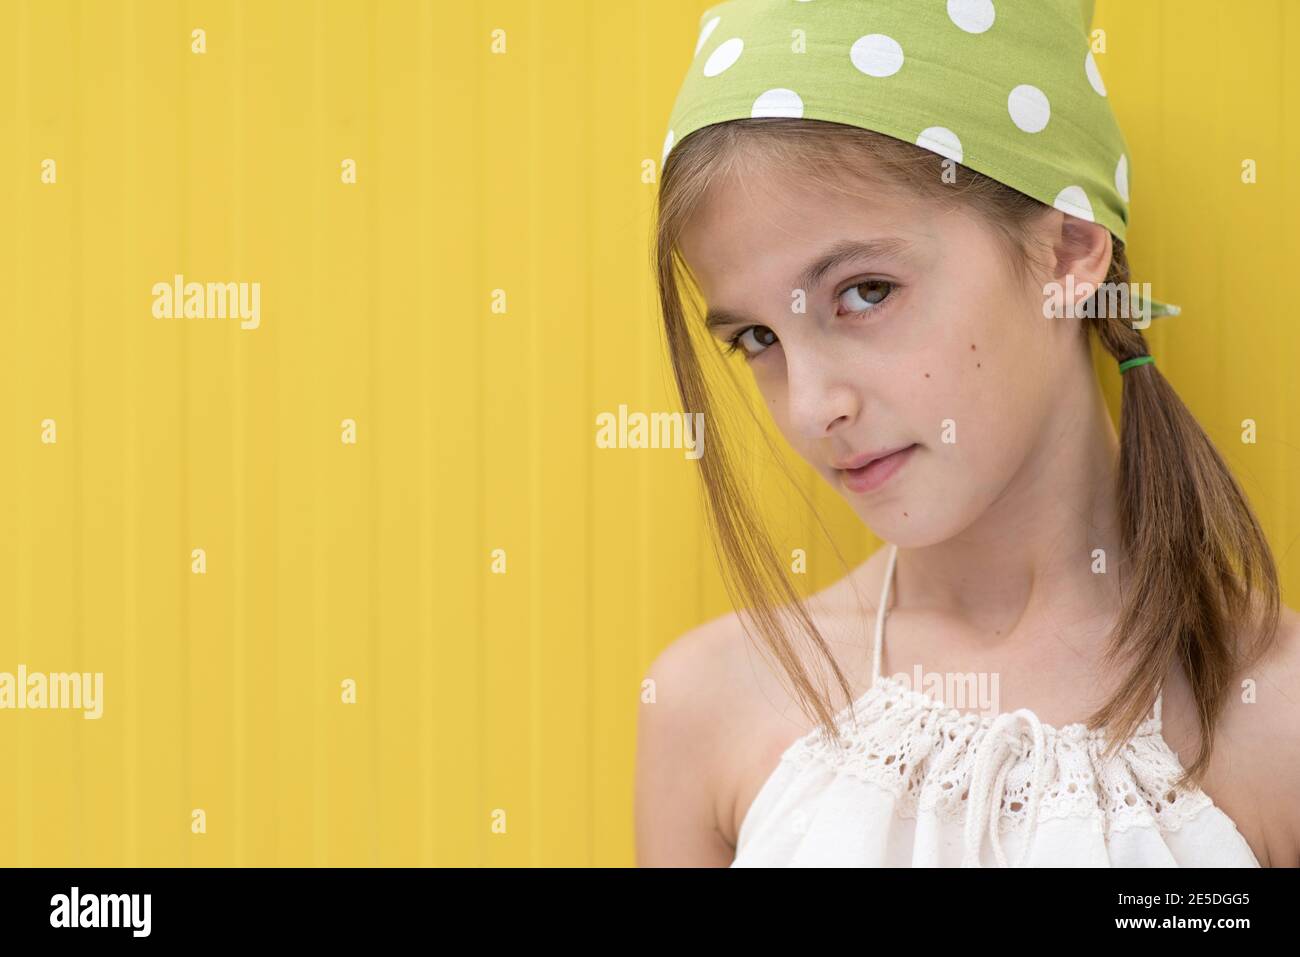 Porträt eines Mädchens mit einem grünen Kopftuch mit Punktmuster Stockfoto